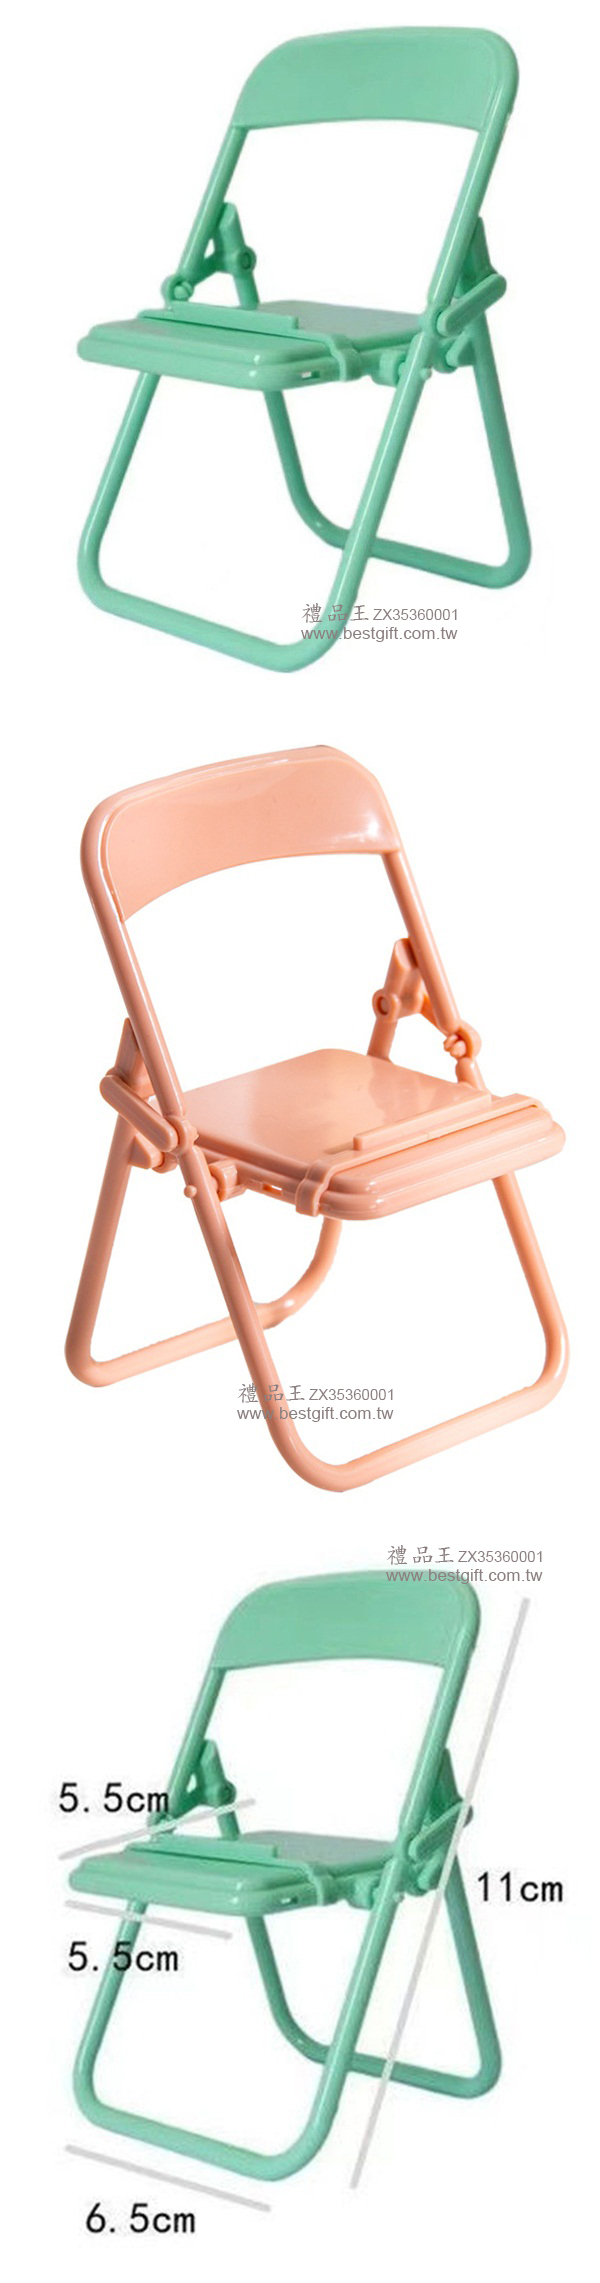 折疊椅手機支架  商品貨號: ZX35360001